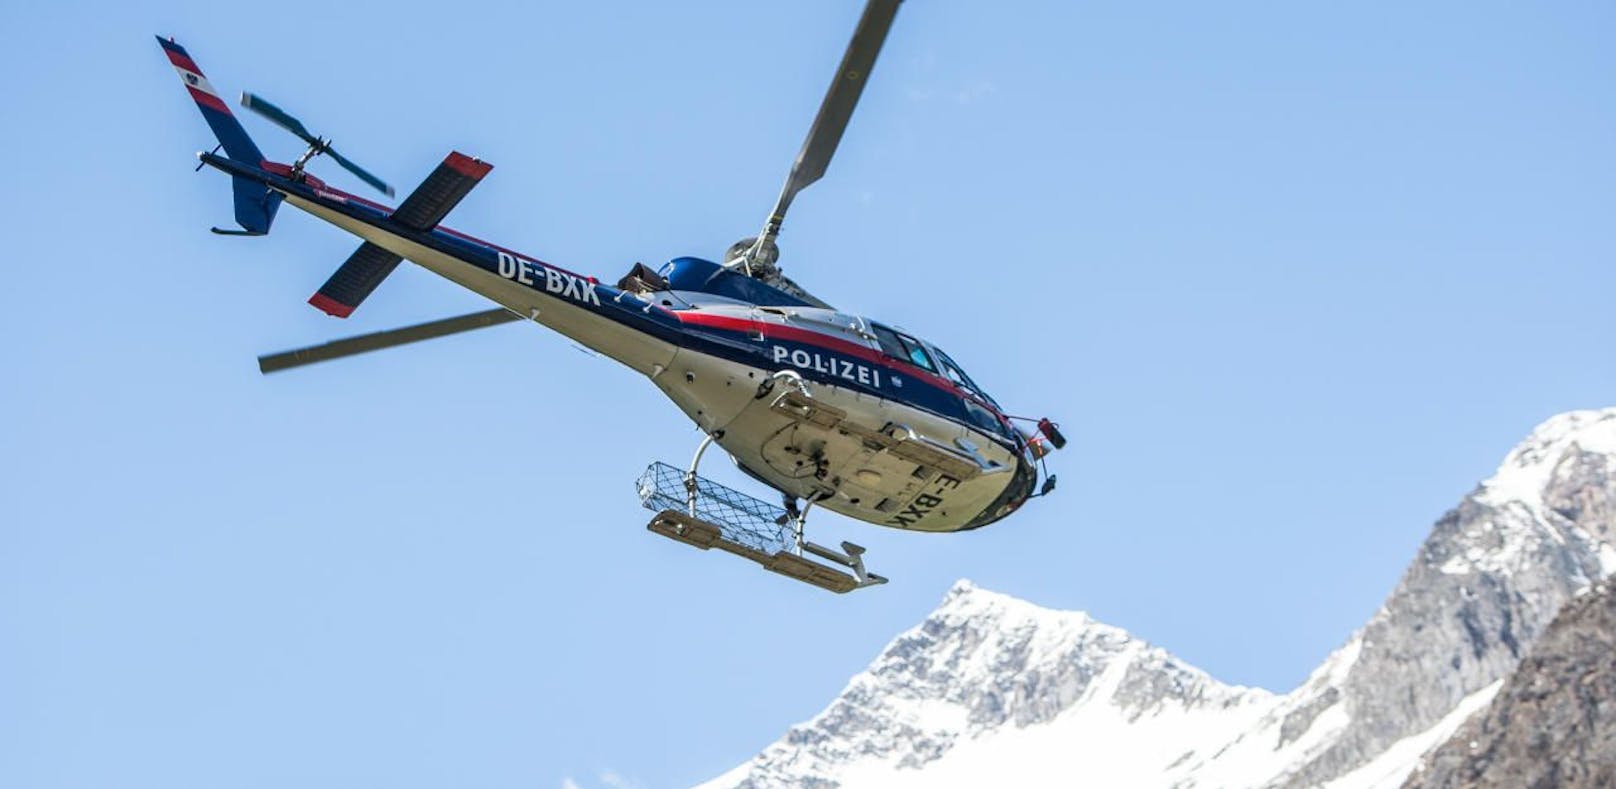 Im Bild der Polizei Hubschrauber Libelle Tirol. Archivbild.